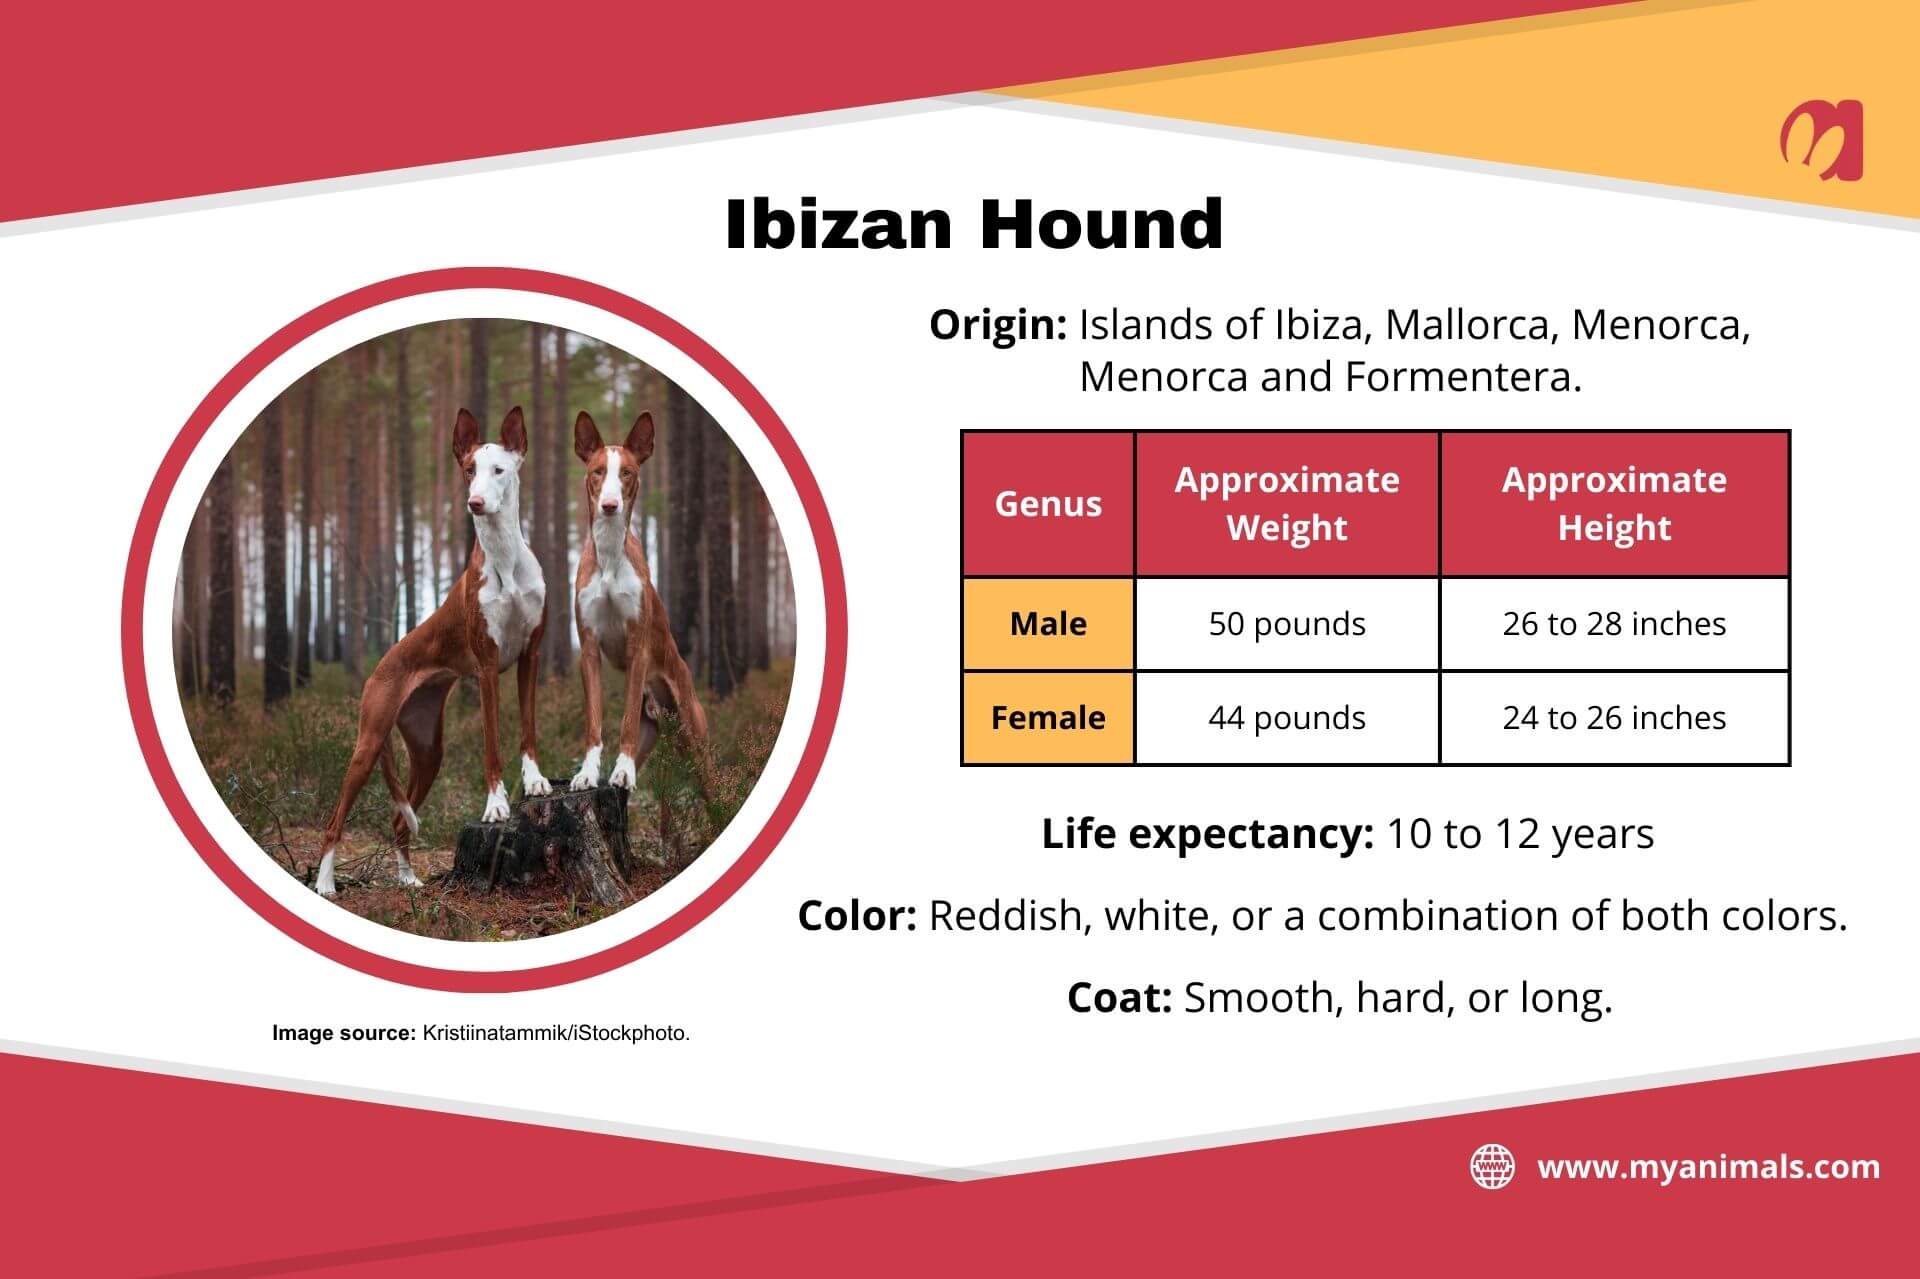 Information on the Ibizan hound.